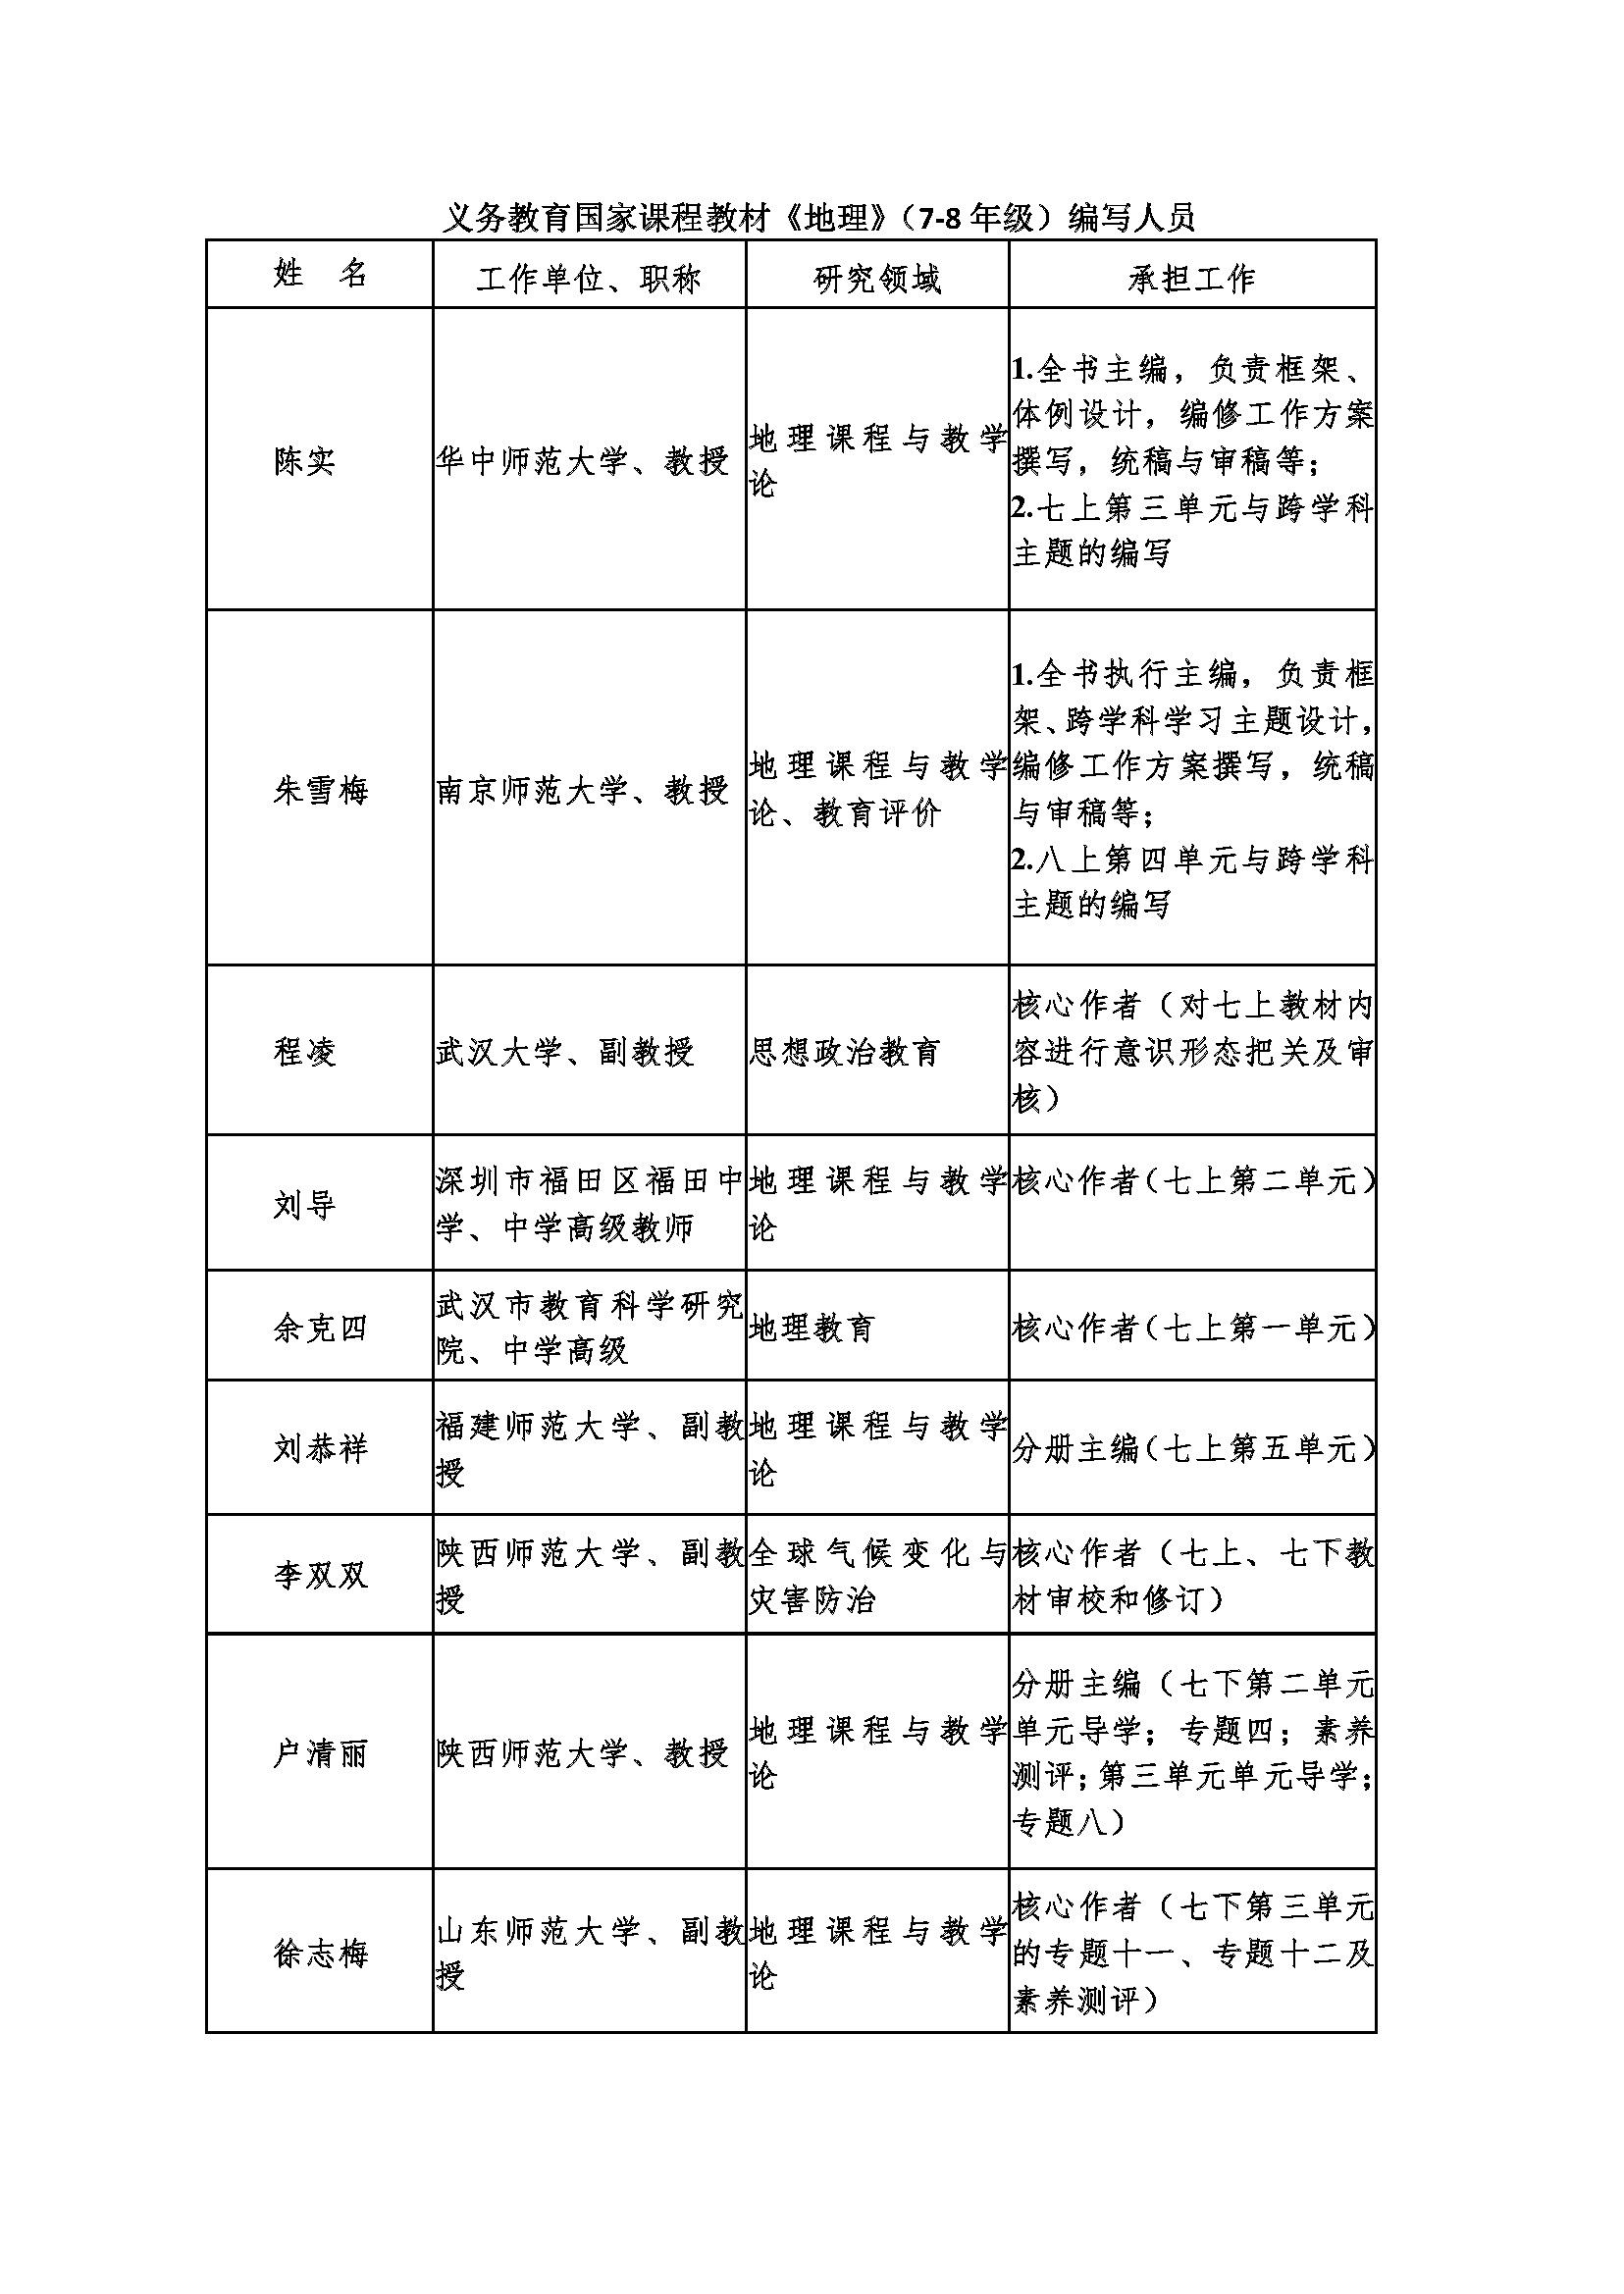 北京市仁爱教育研究所编著、科学普及出版社出版的 义务教育国家课程教材《英语》（7-9年级）、《地理》（7-8年级）、《化学》（9年级） 	    编写人员面向社会统一公示(图3)